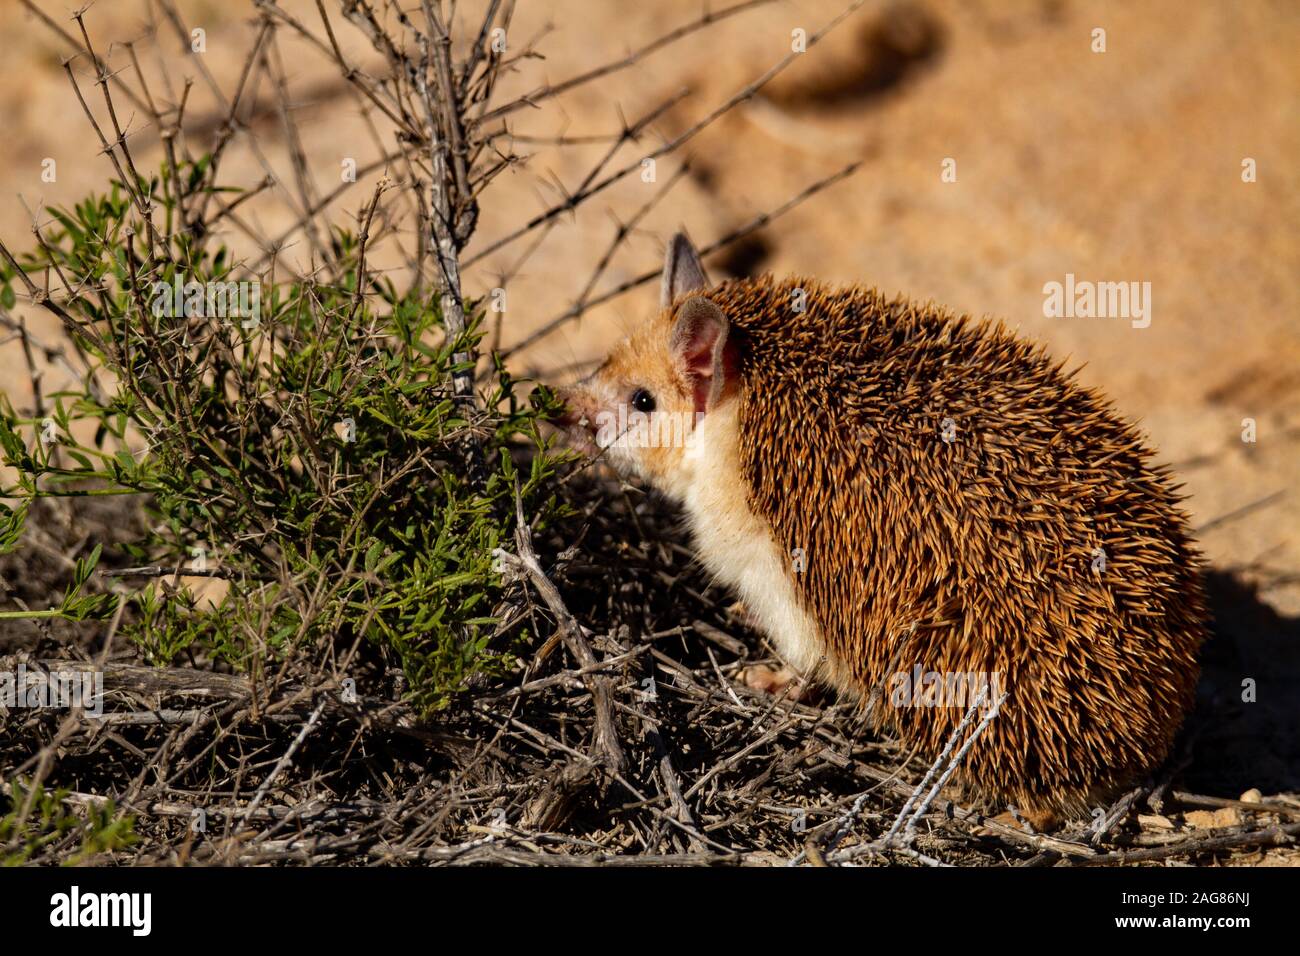 Le hibou moyen-hedgehog (Hemiechinus auritus) est une espèce de hérisson originaire d'Asie centrale et certains pays du Moyen-Orient. La lo Banque D'Images